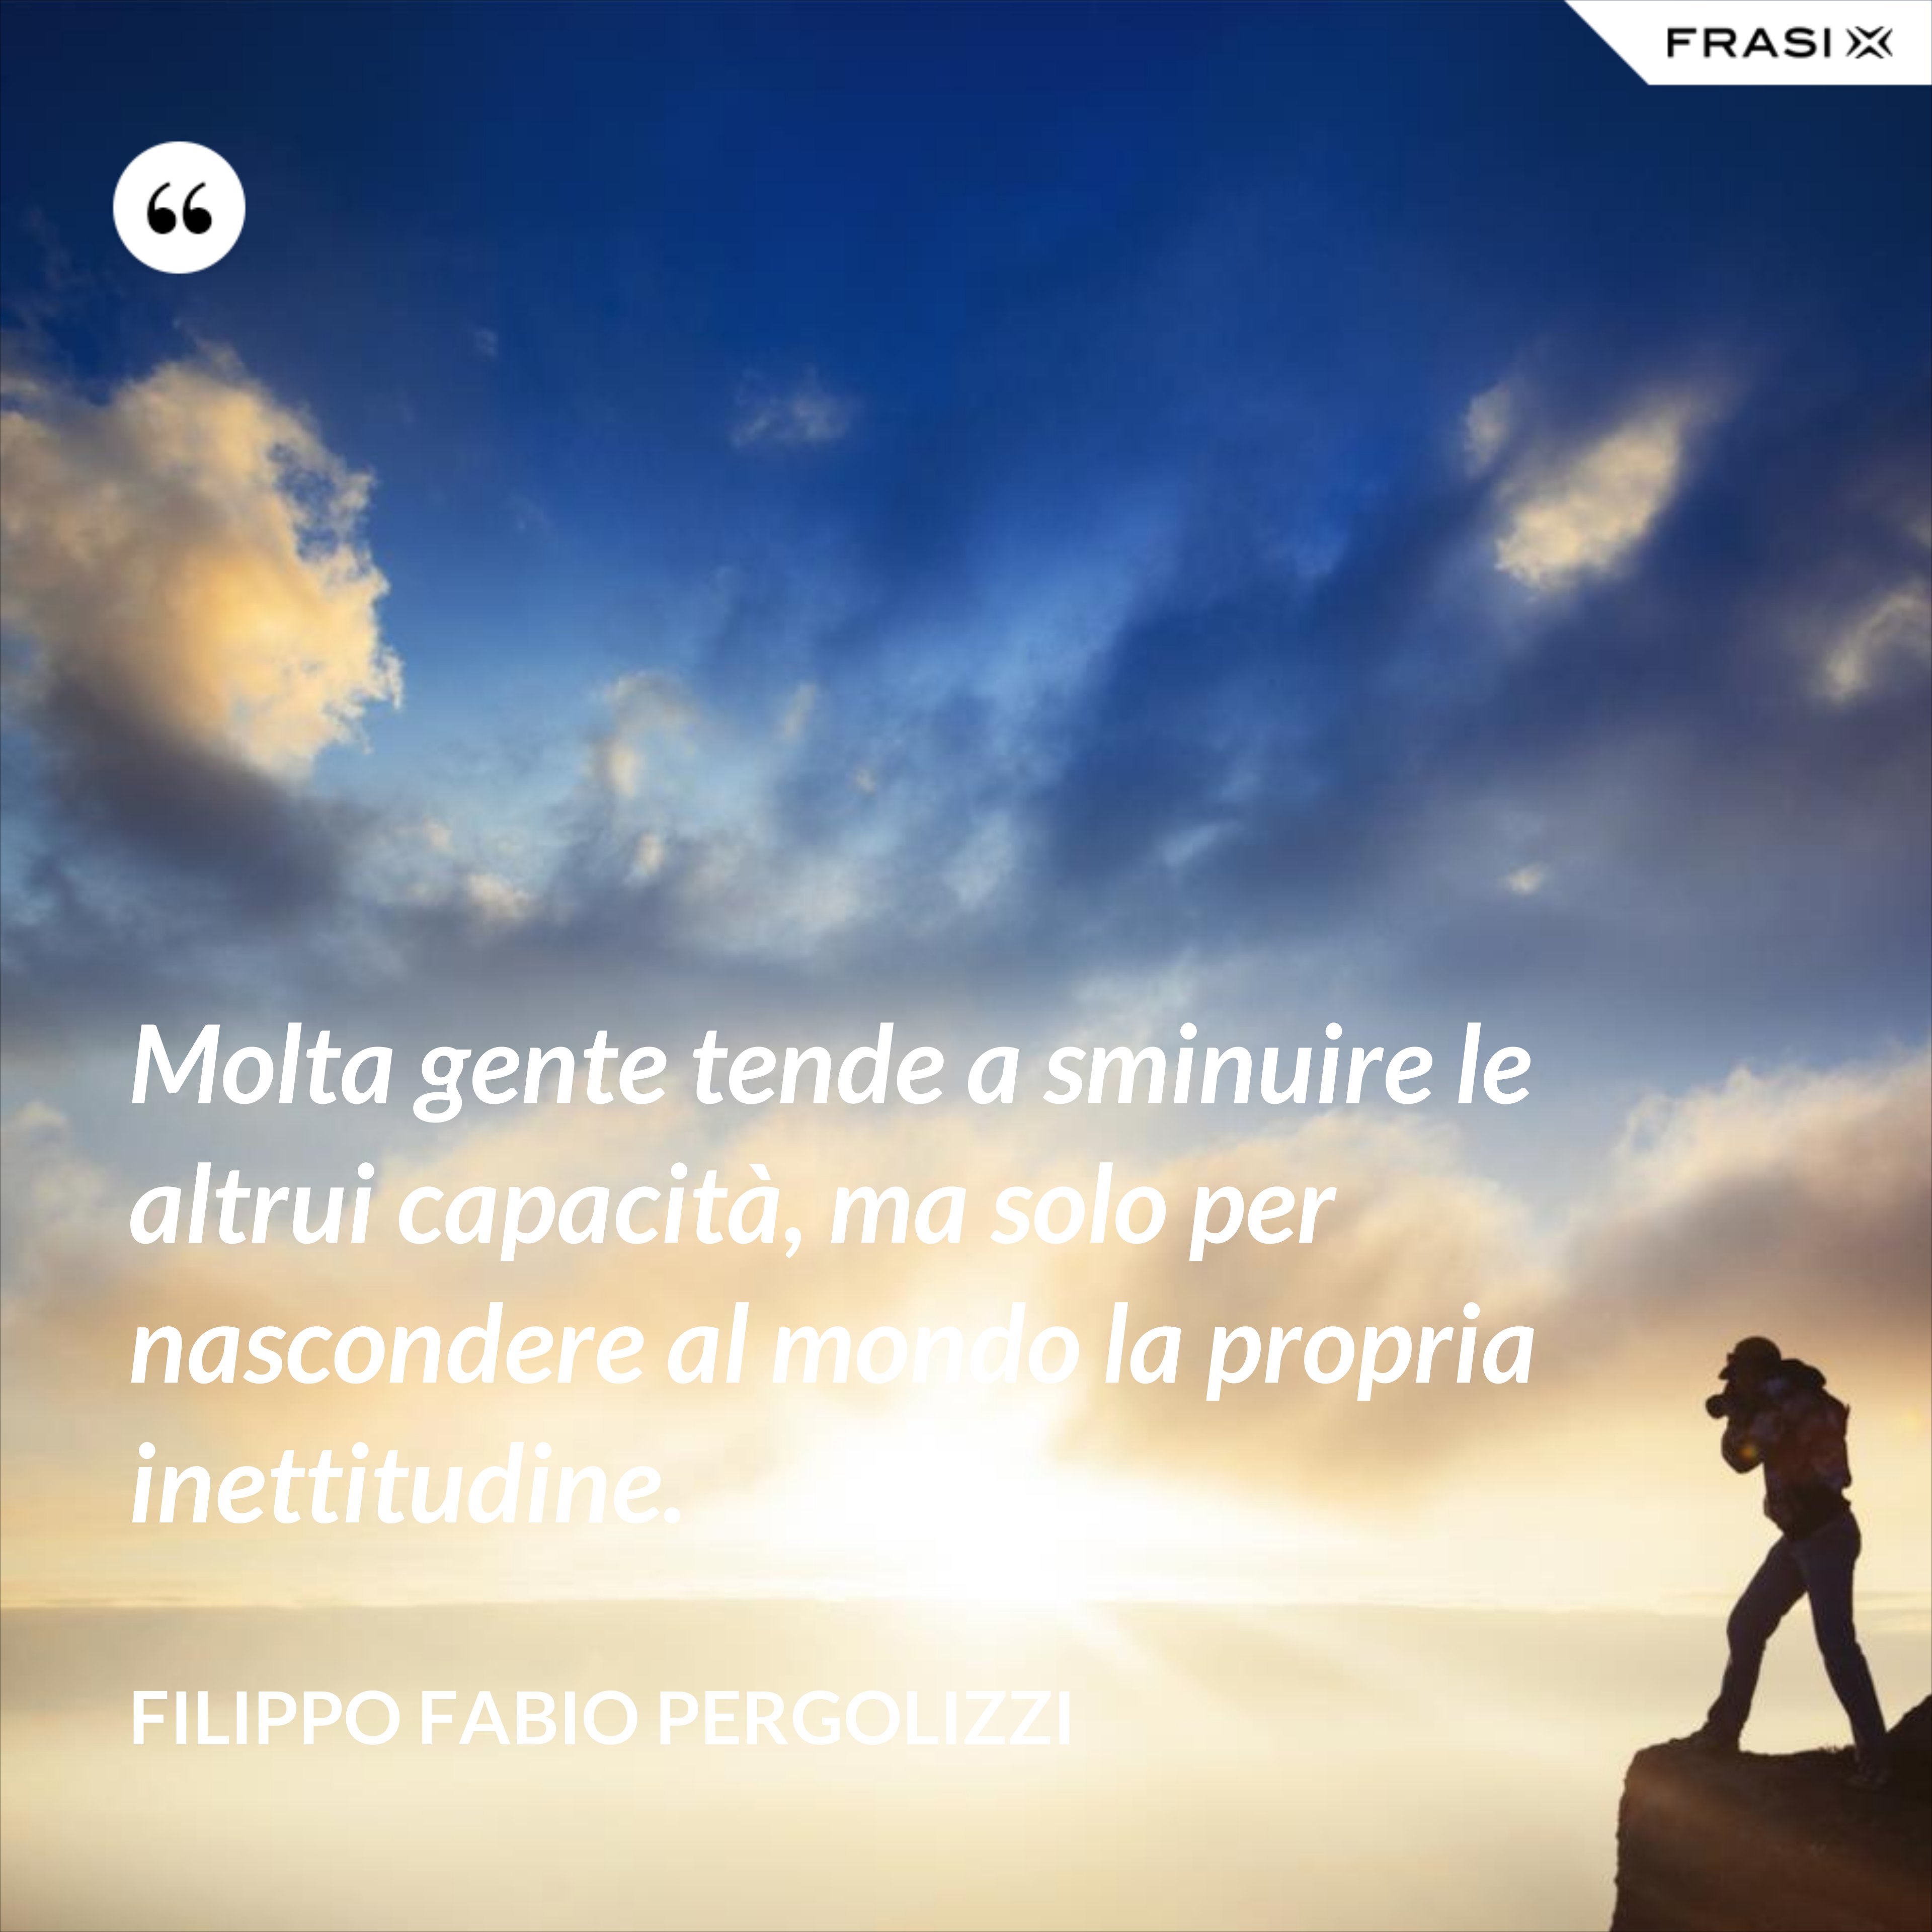 Molta gente tende a sminuire le altrui capacità, ma solo per nascondere al mondo la propria inettitudine. - Filippo Fabio Pergolizzi